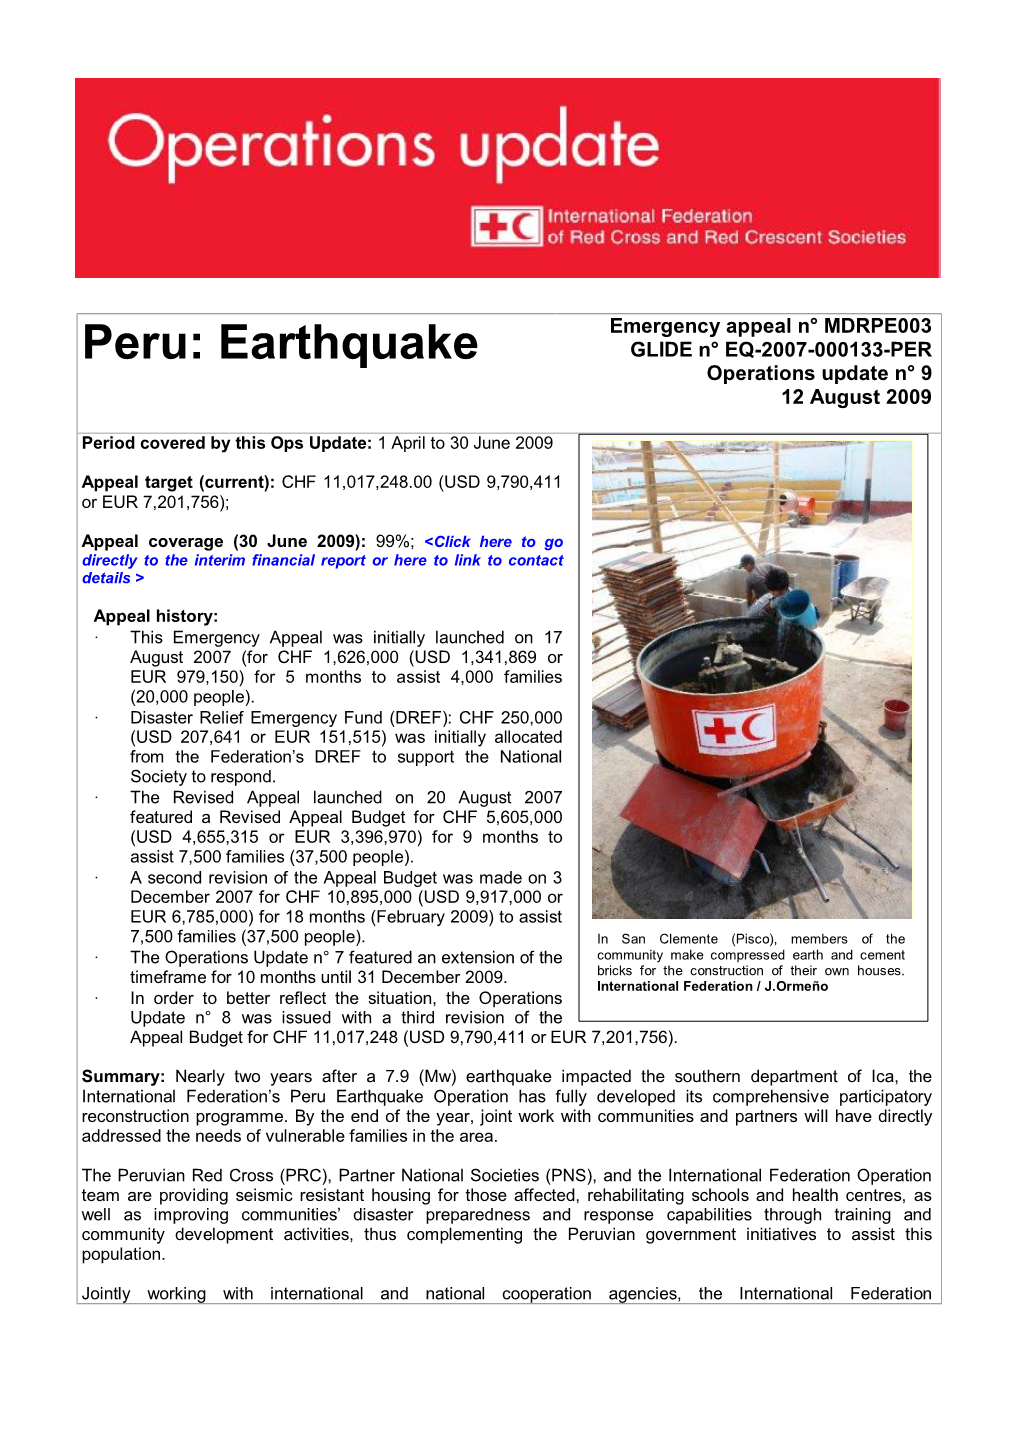 Peru: Earthquake GLIDE N° EQ-2007-000133-PER Operations Update N° 9 12 August 2009